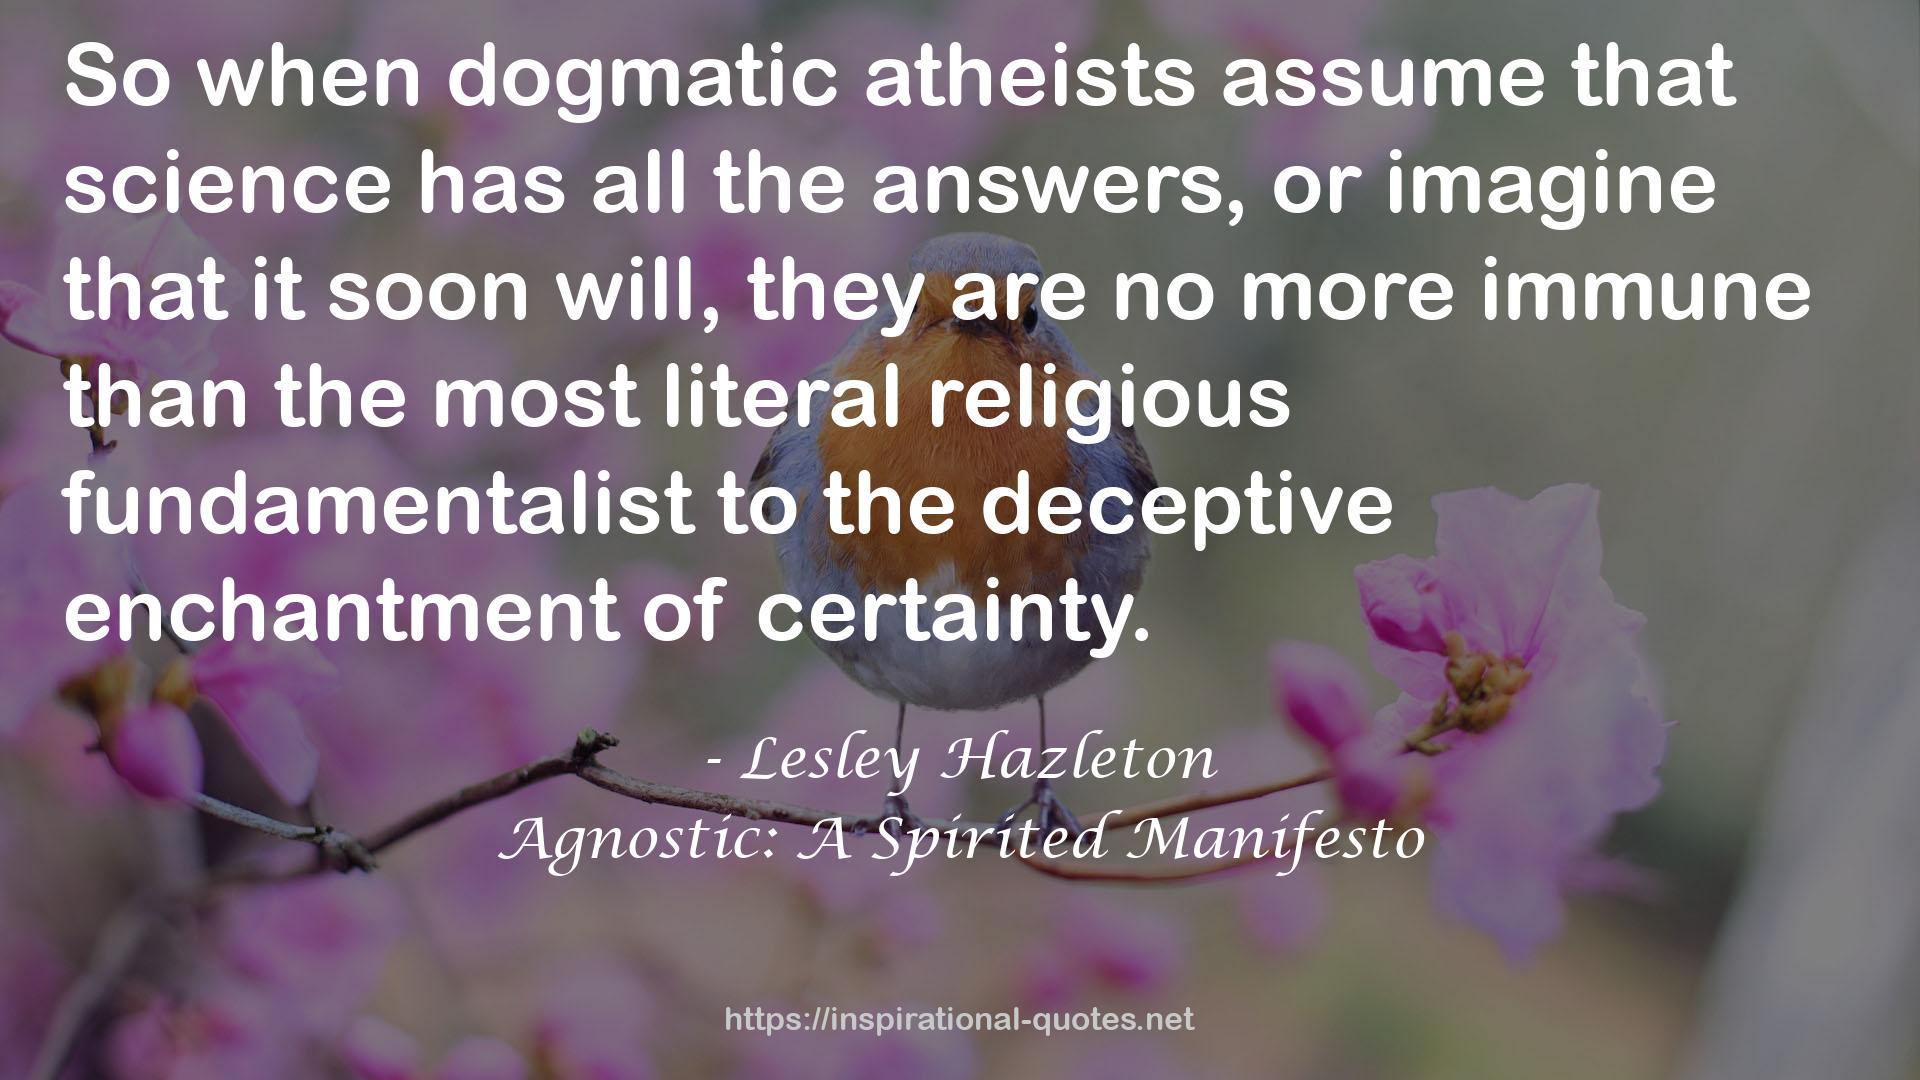 Agnostic: A Spirited Manifesto QUOTES